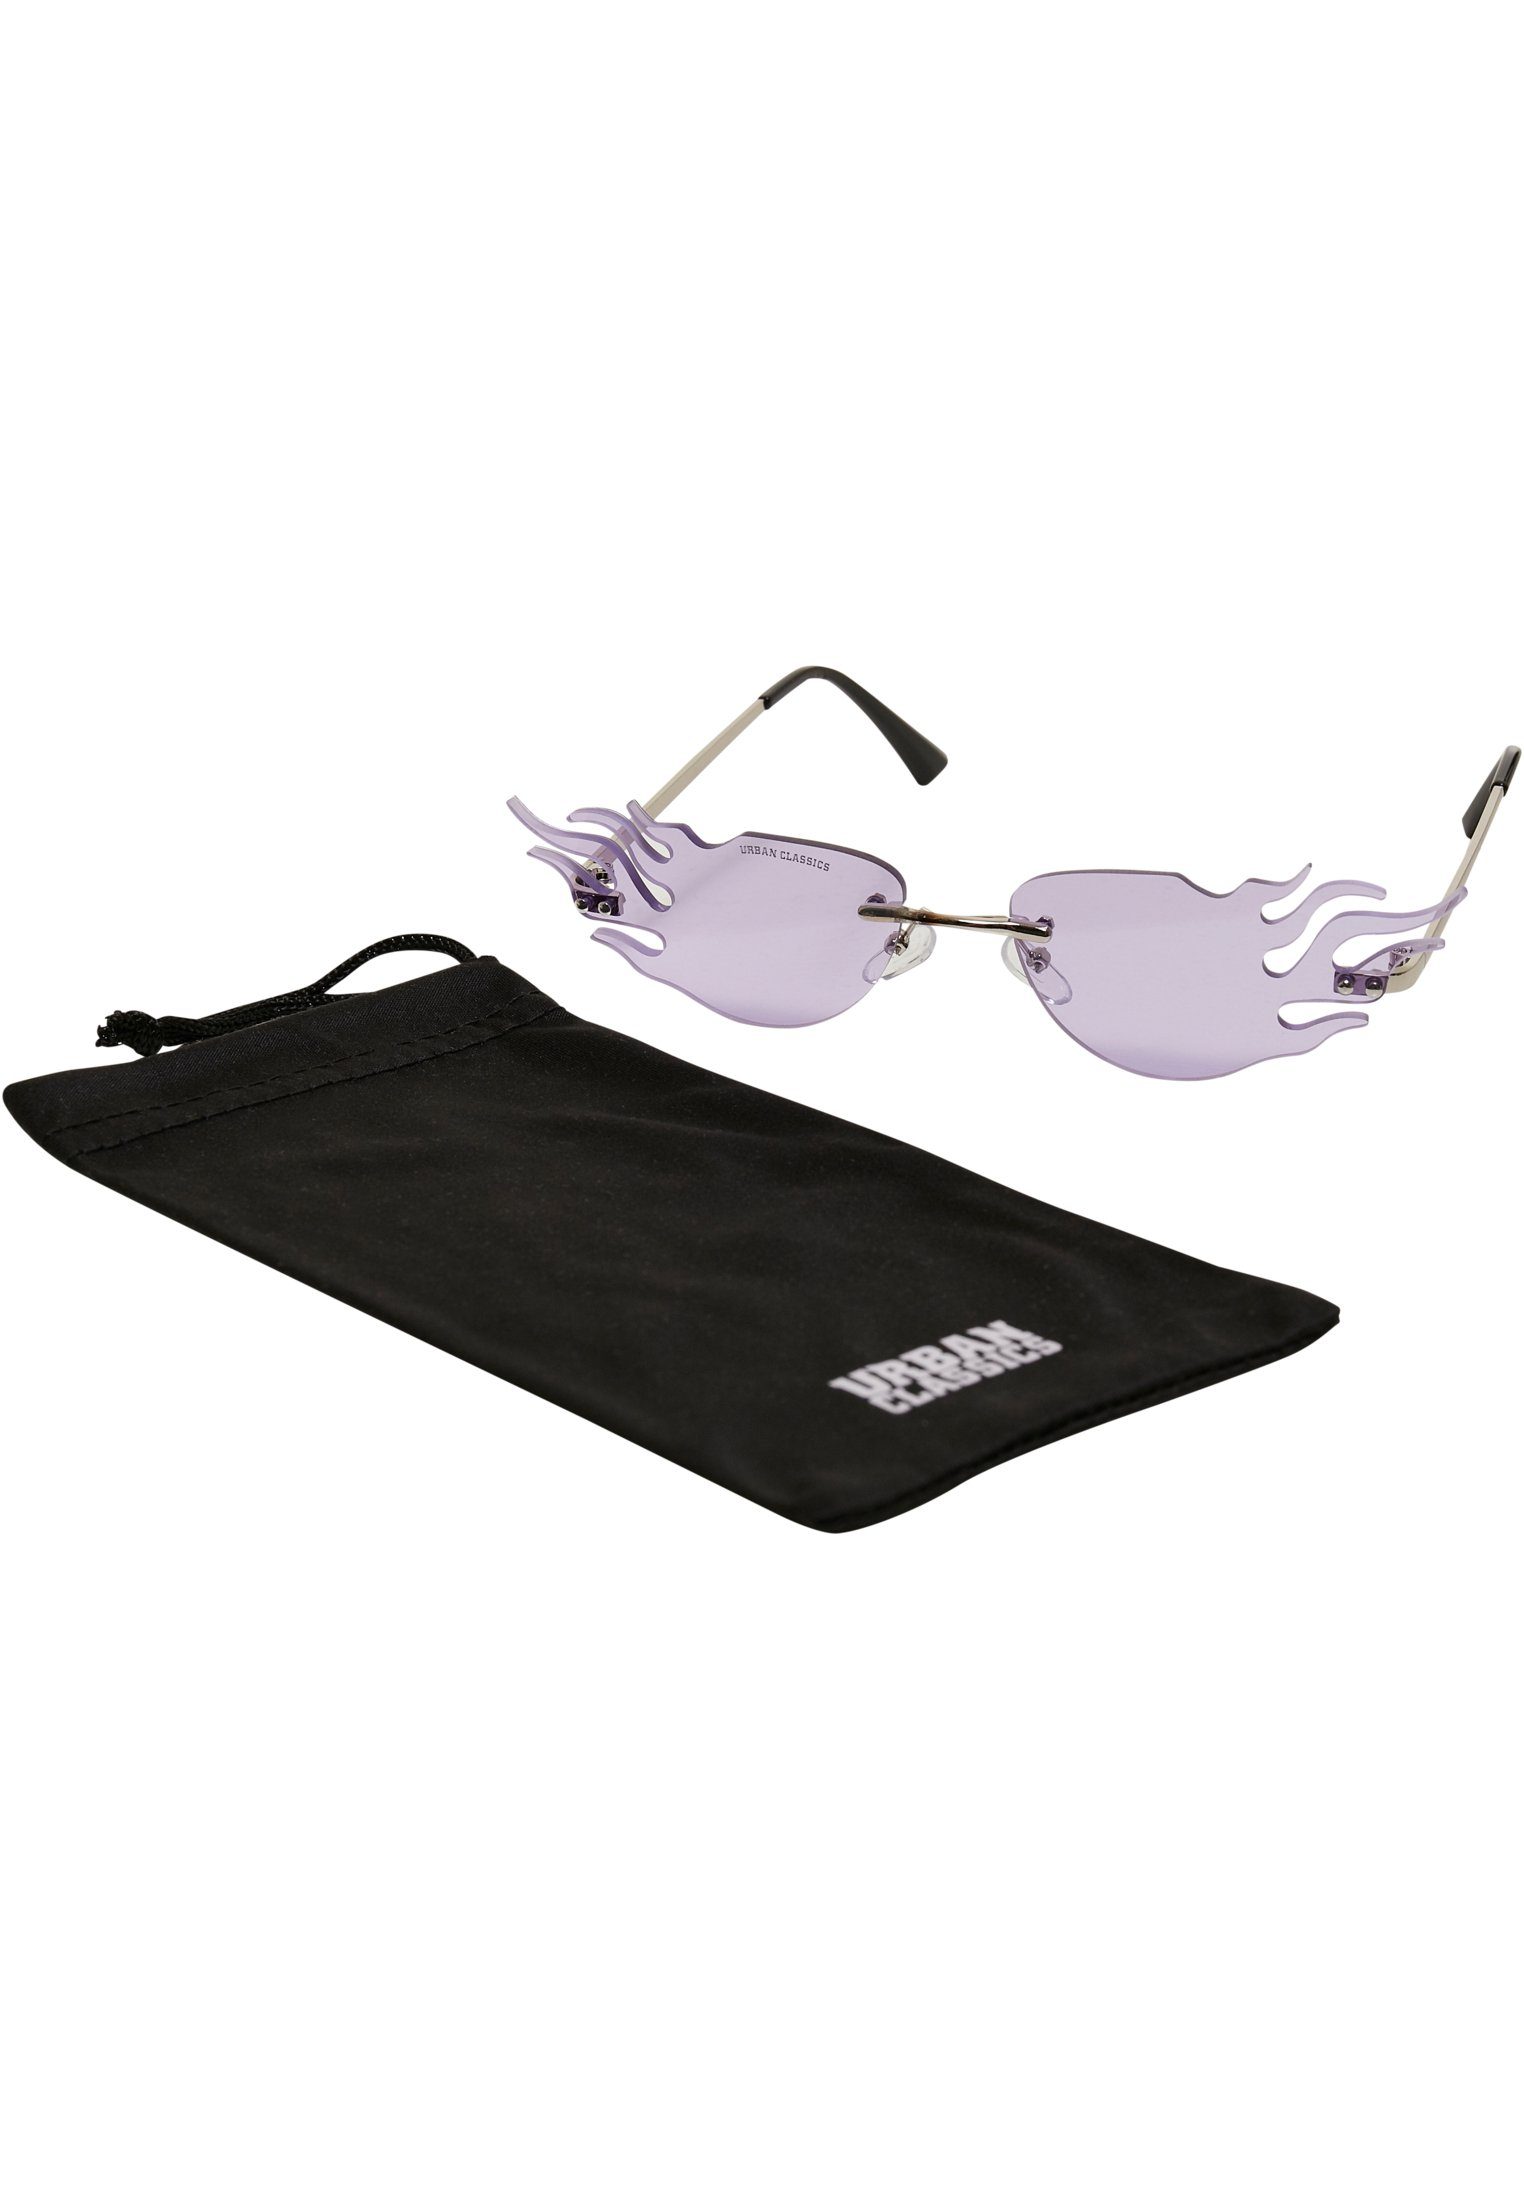 URBAN CLASSICS Sonnenbrille Unisex Sunglasses Flame | Sonnenbrillen